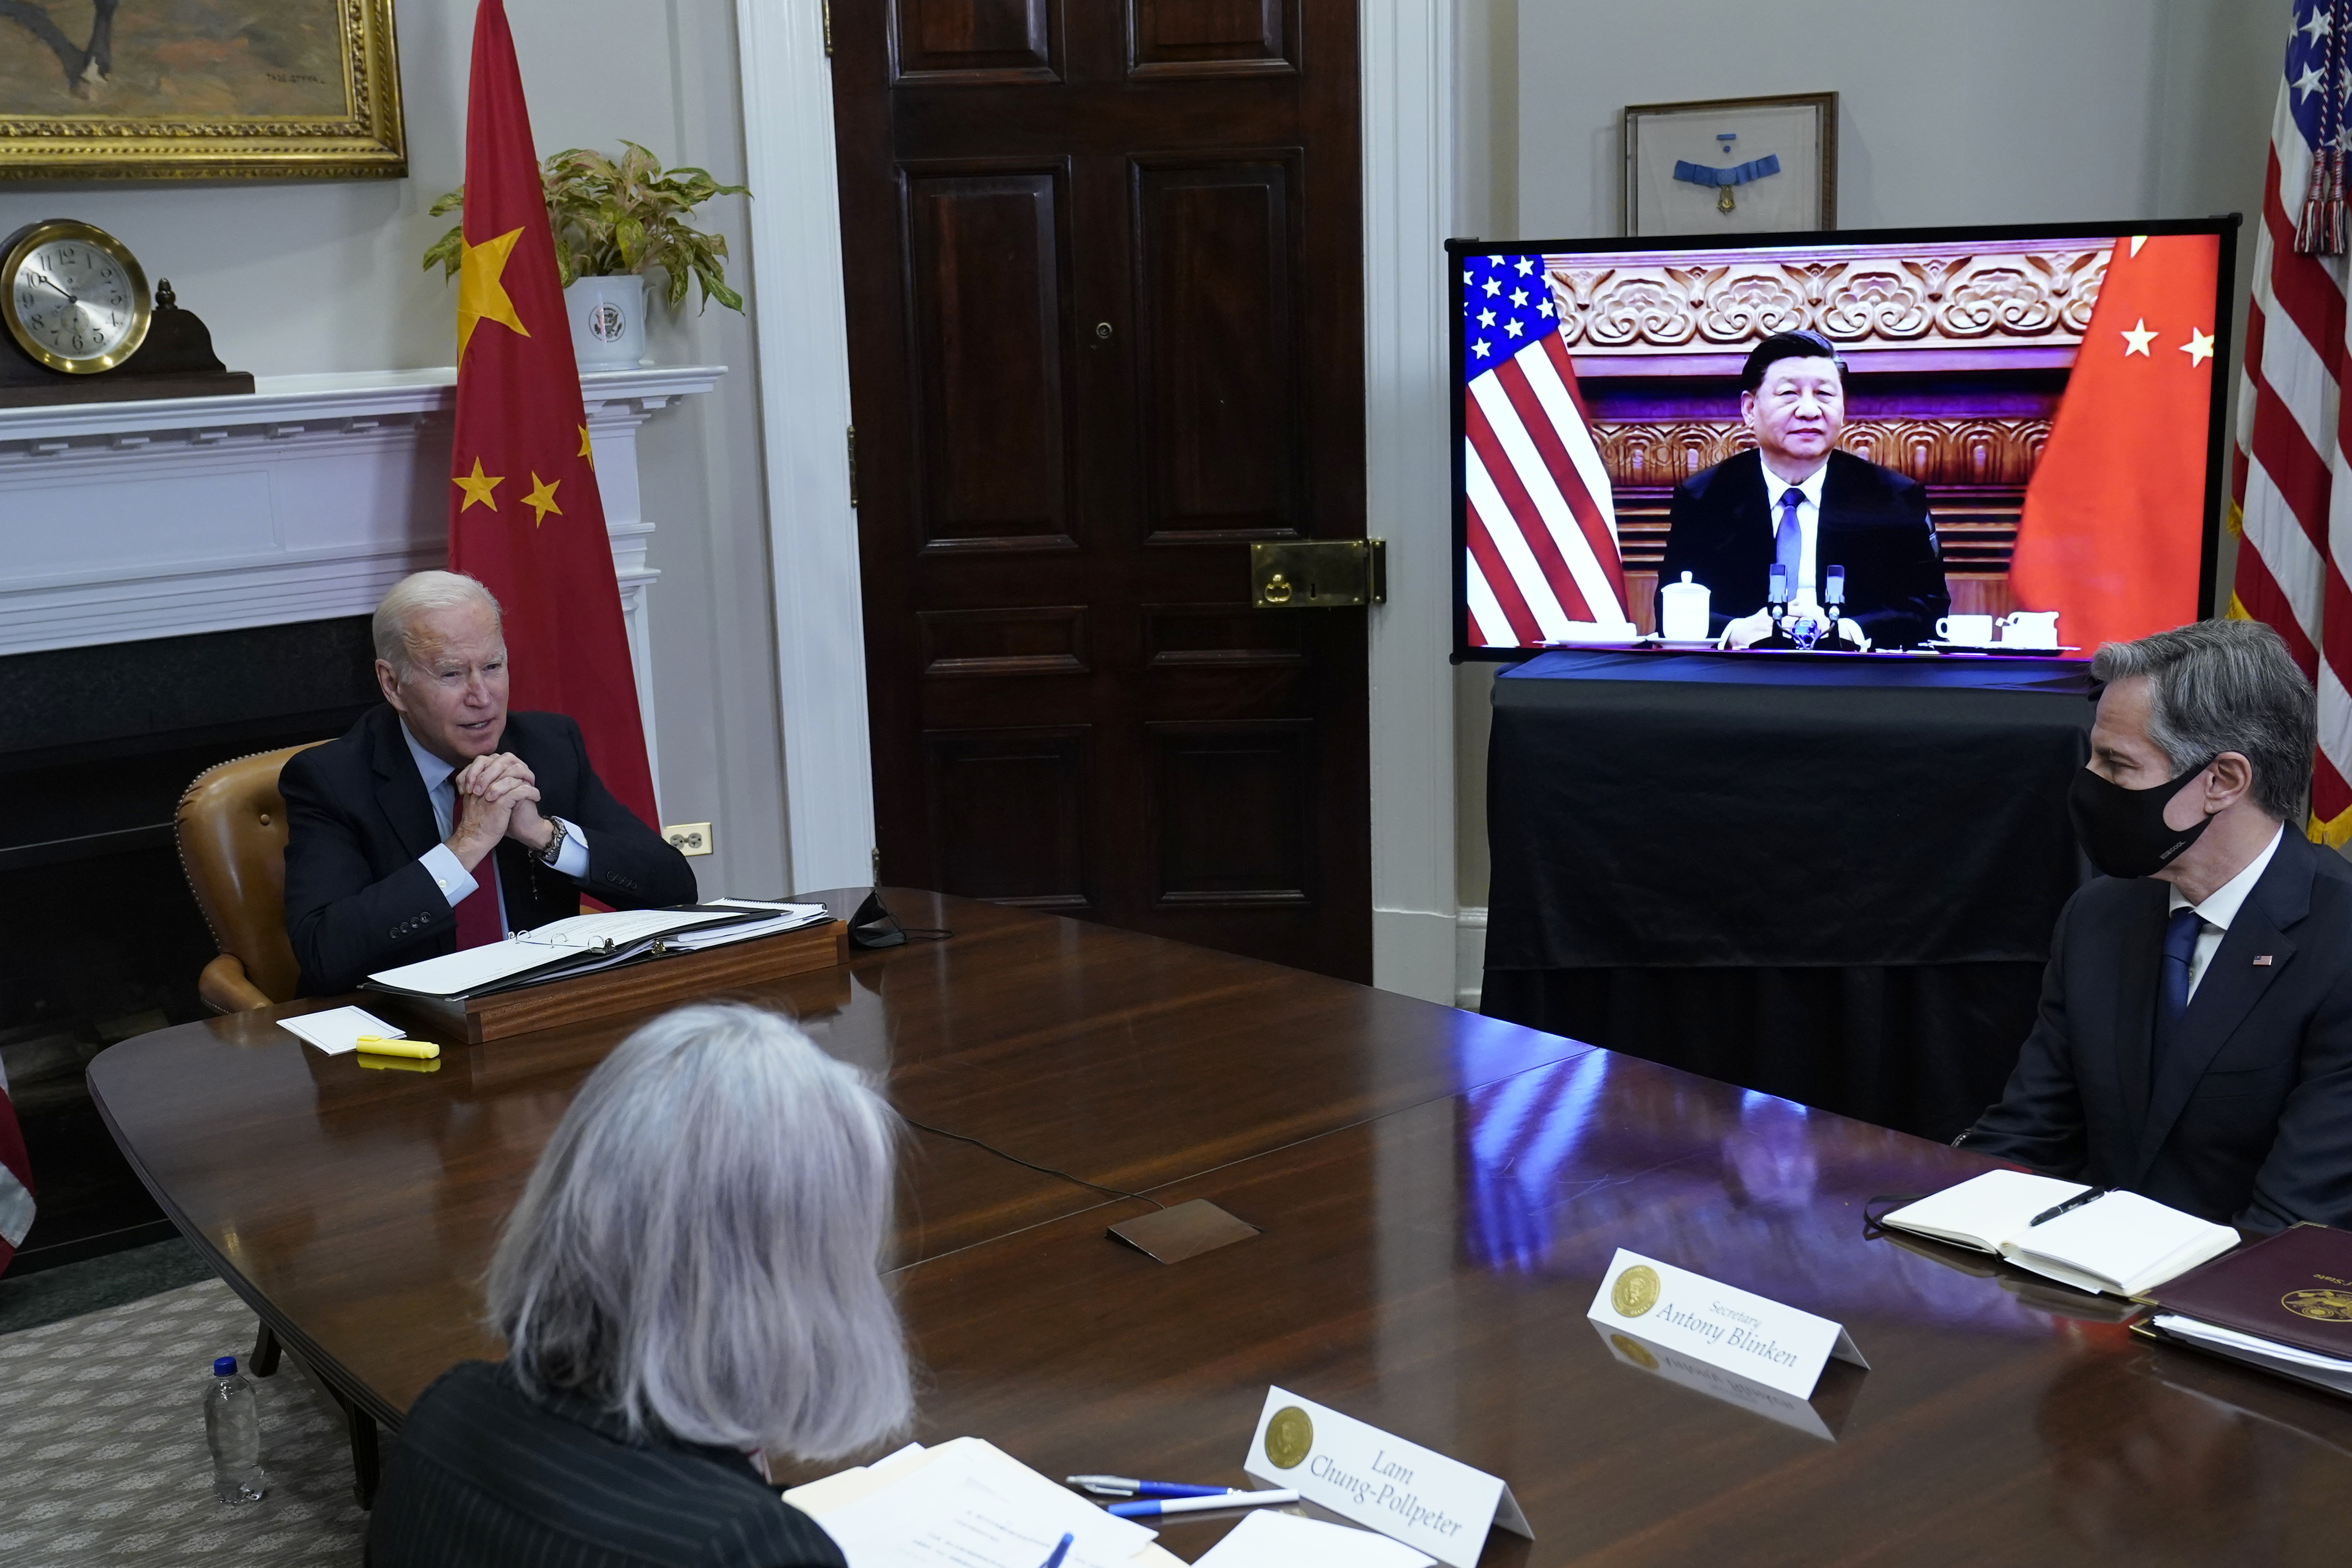 Biden in a virtual meeting with Xi Jinping.